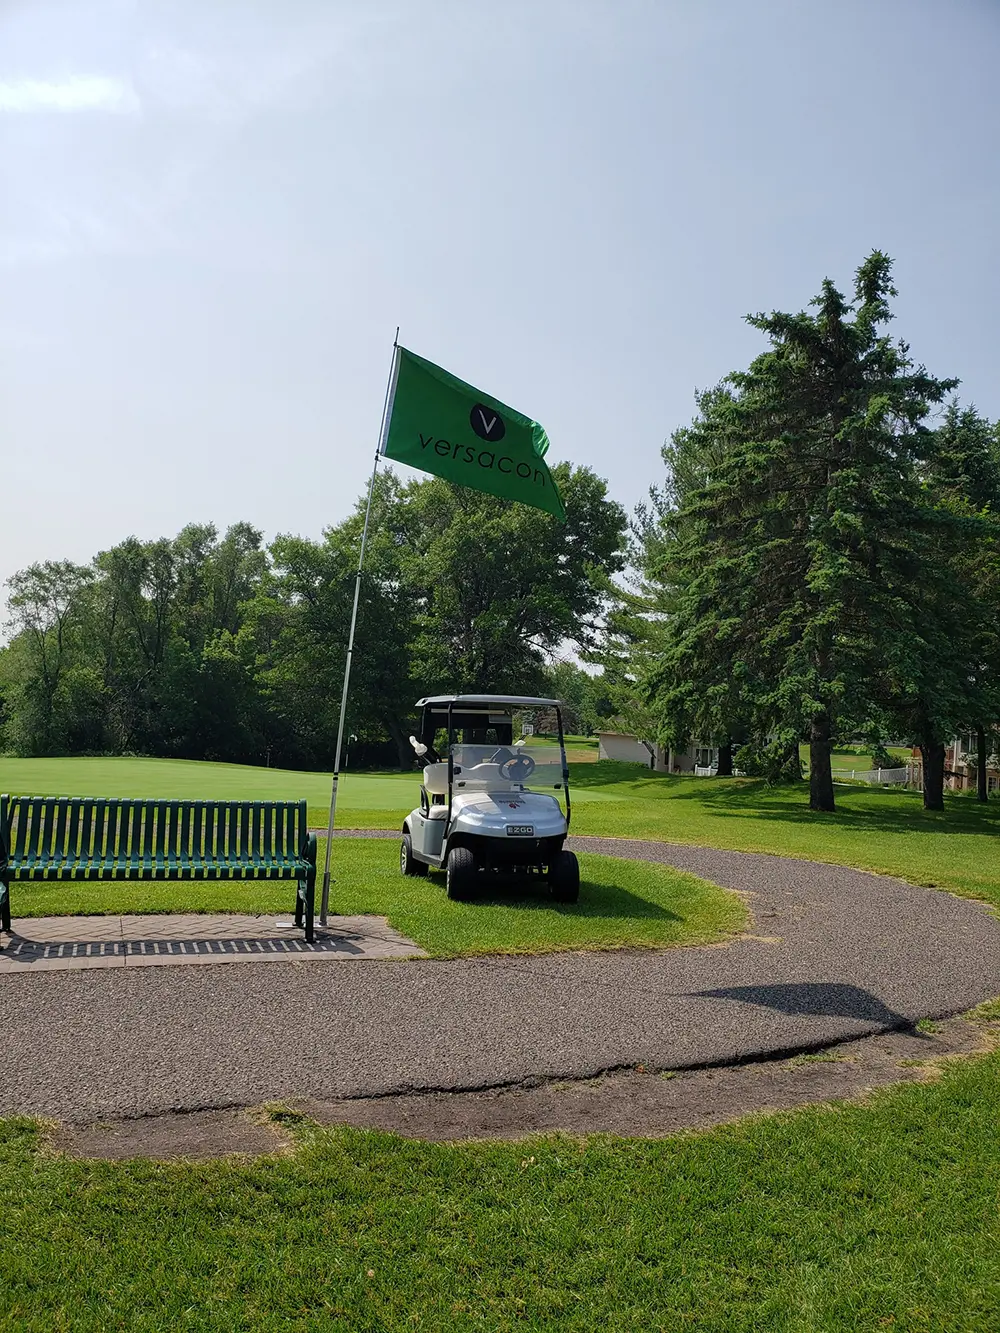 Golf cart Image